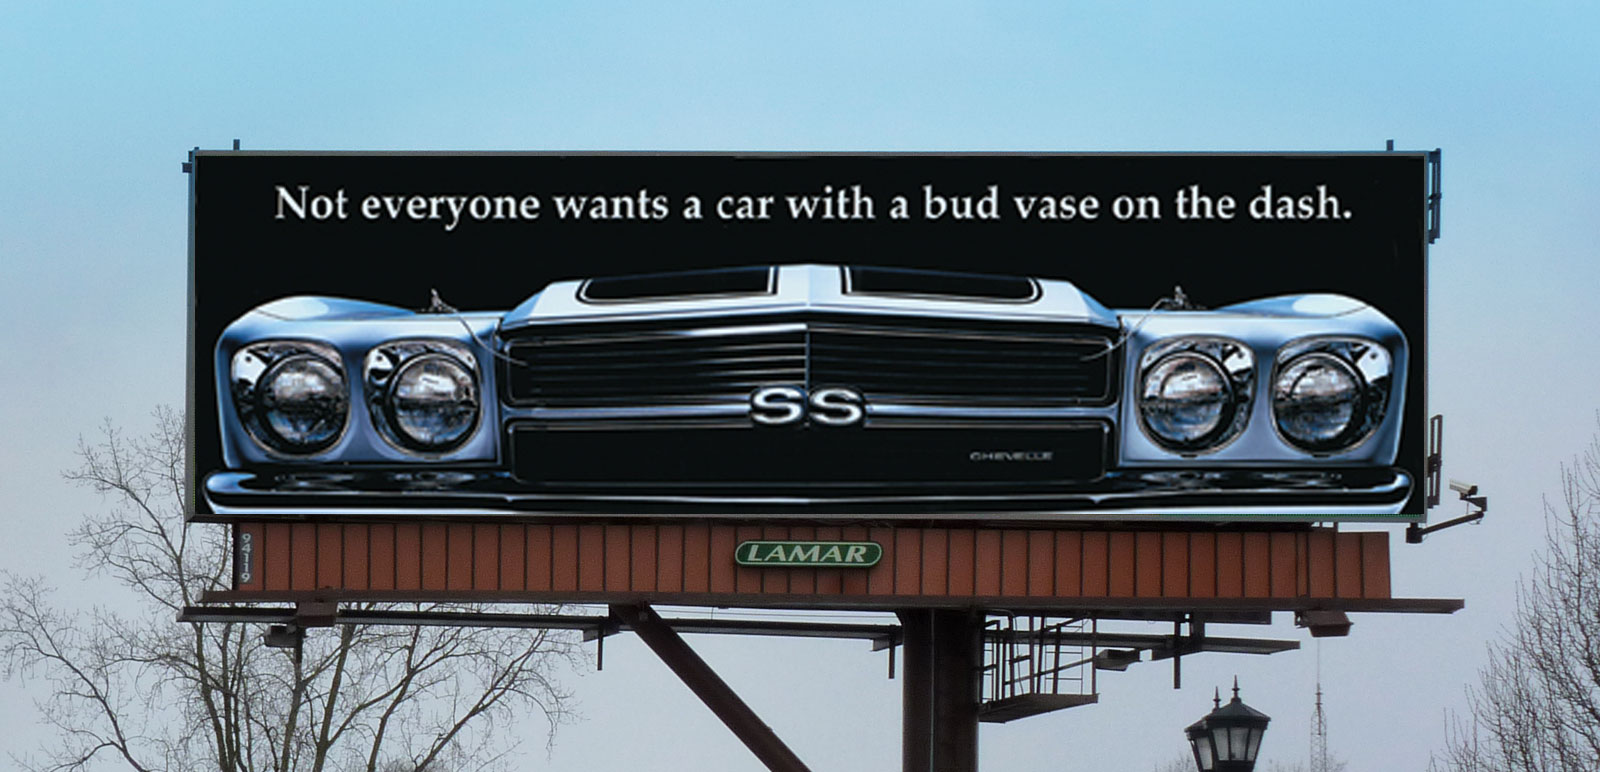 outdoor billboard advertising